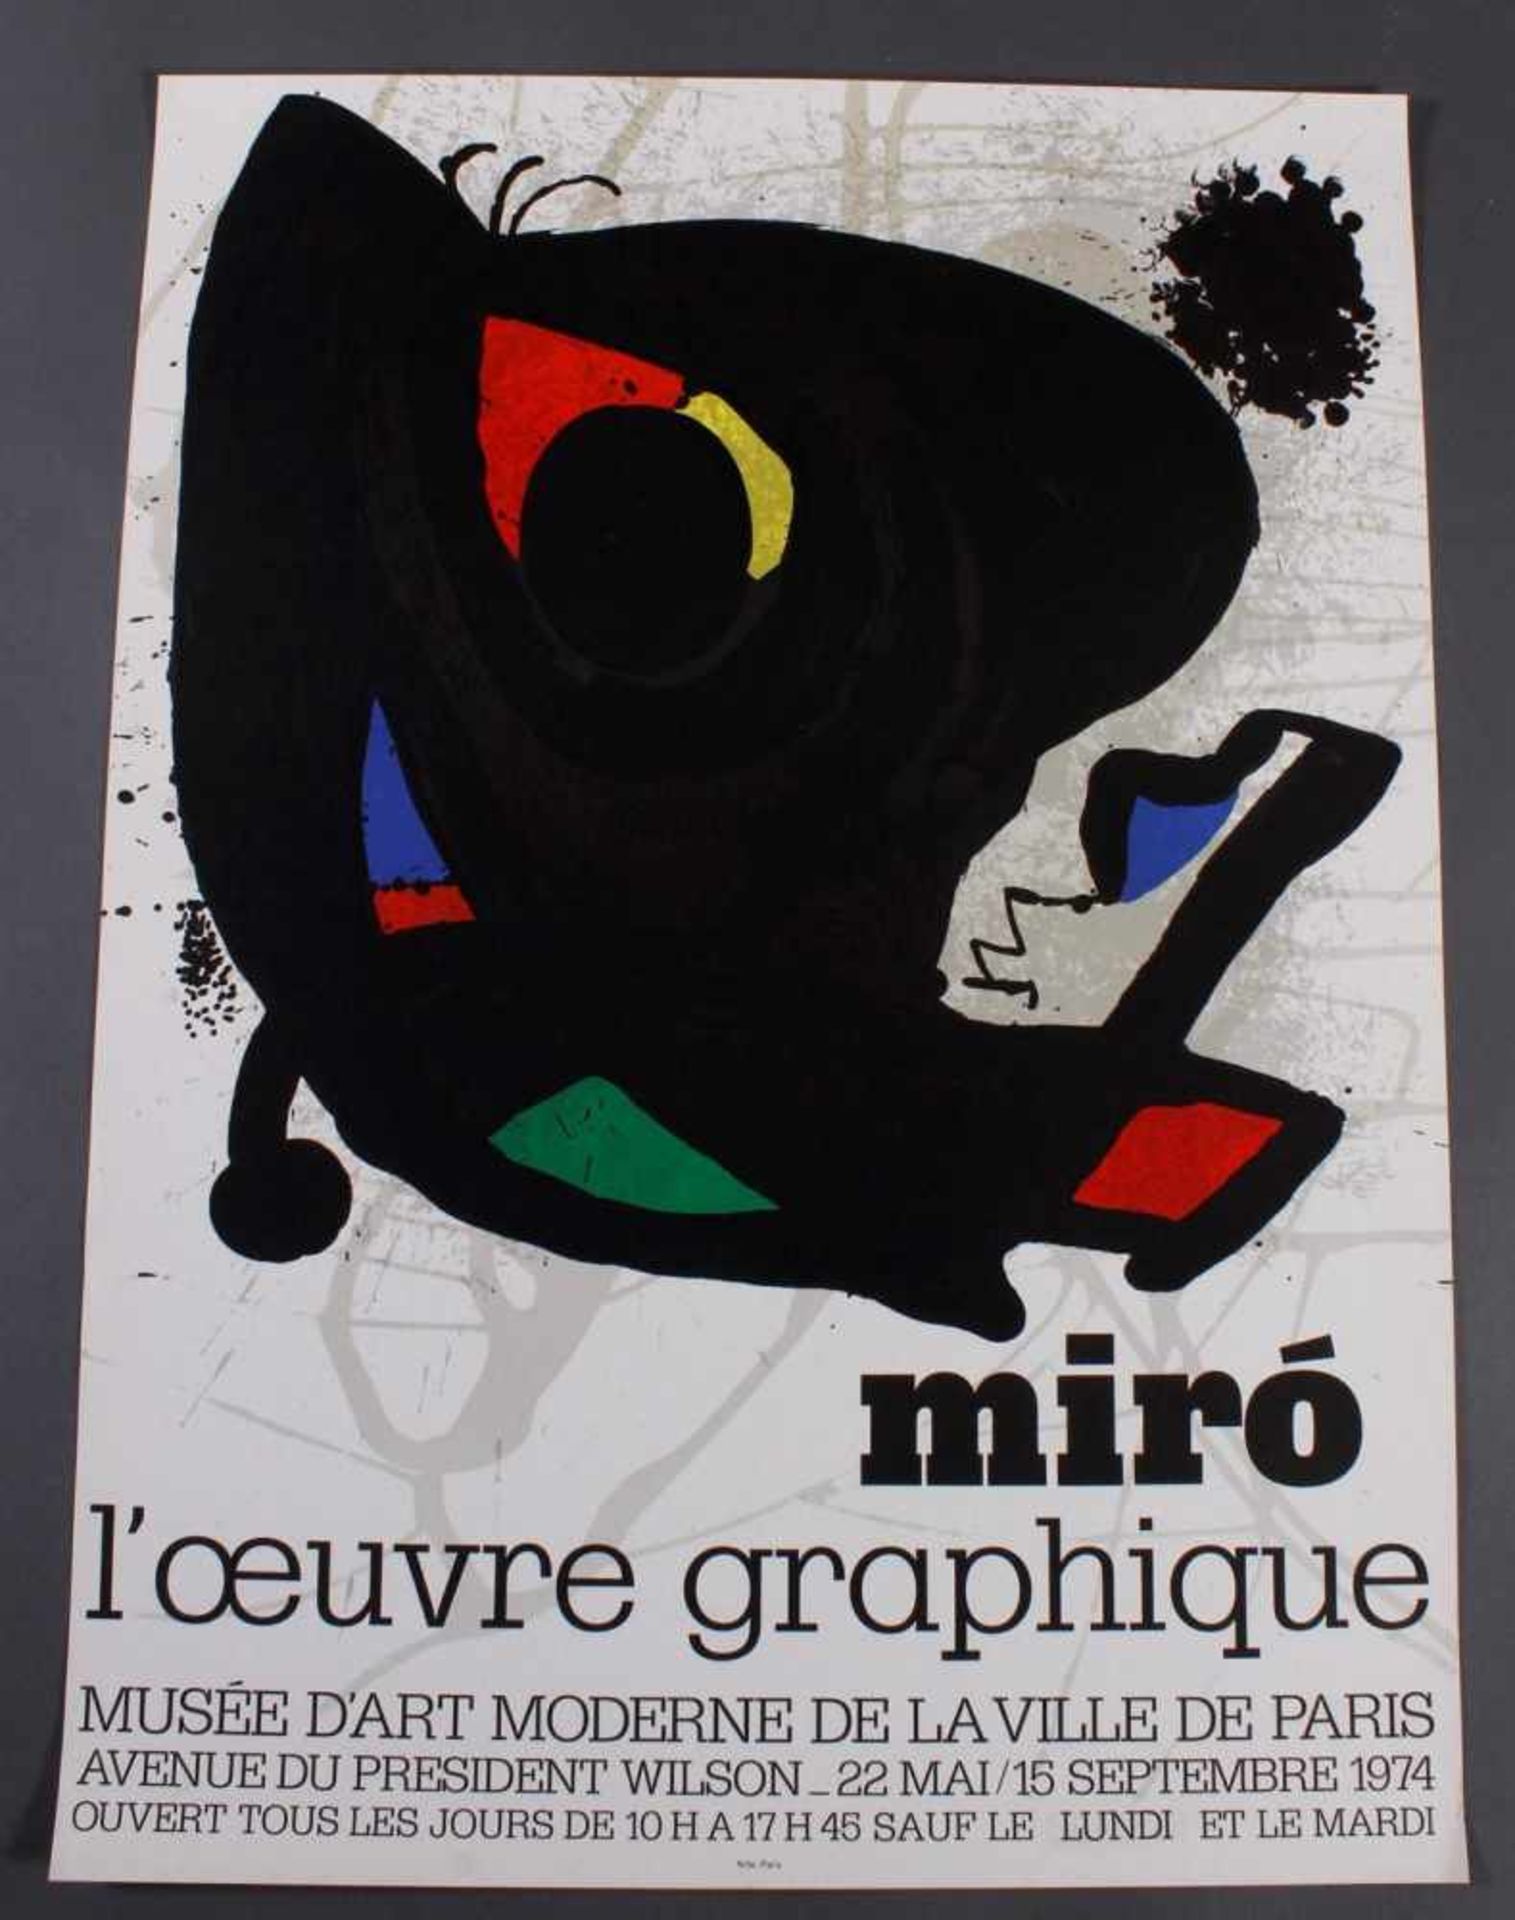 Joan Miro Plakat "l'oeuvre graphique", Paris 1974